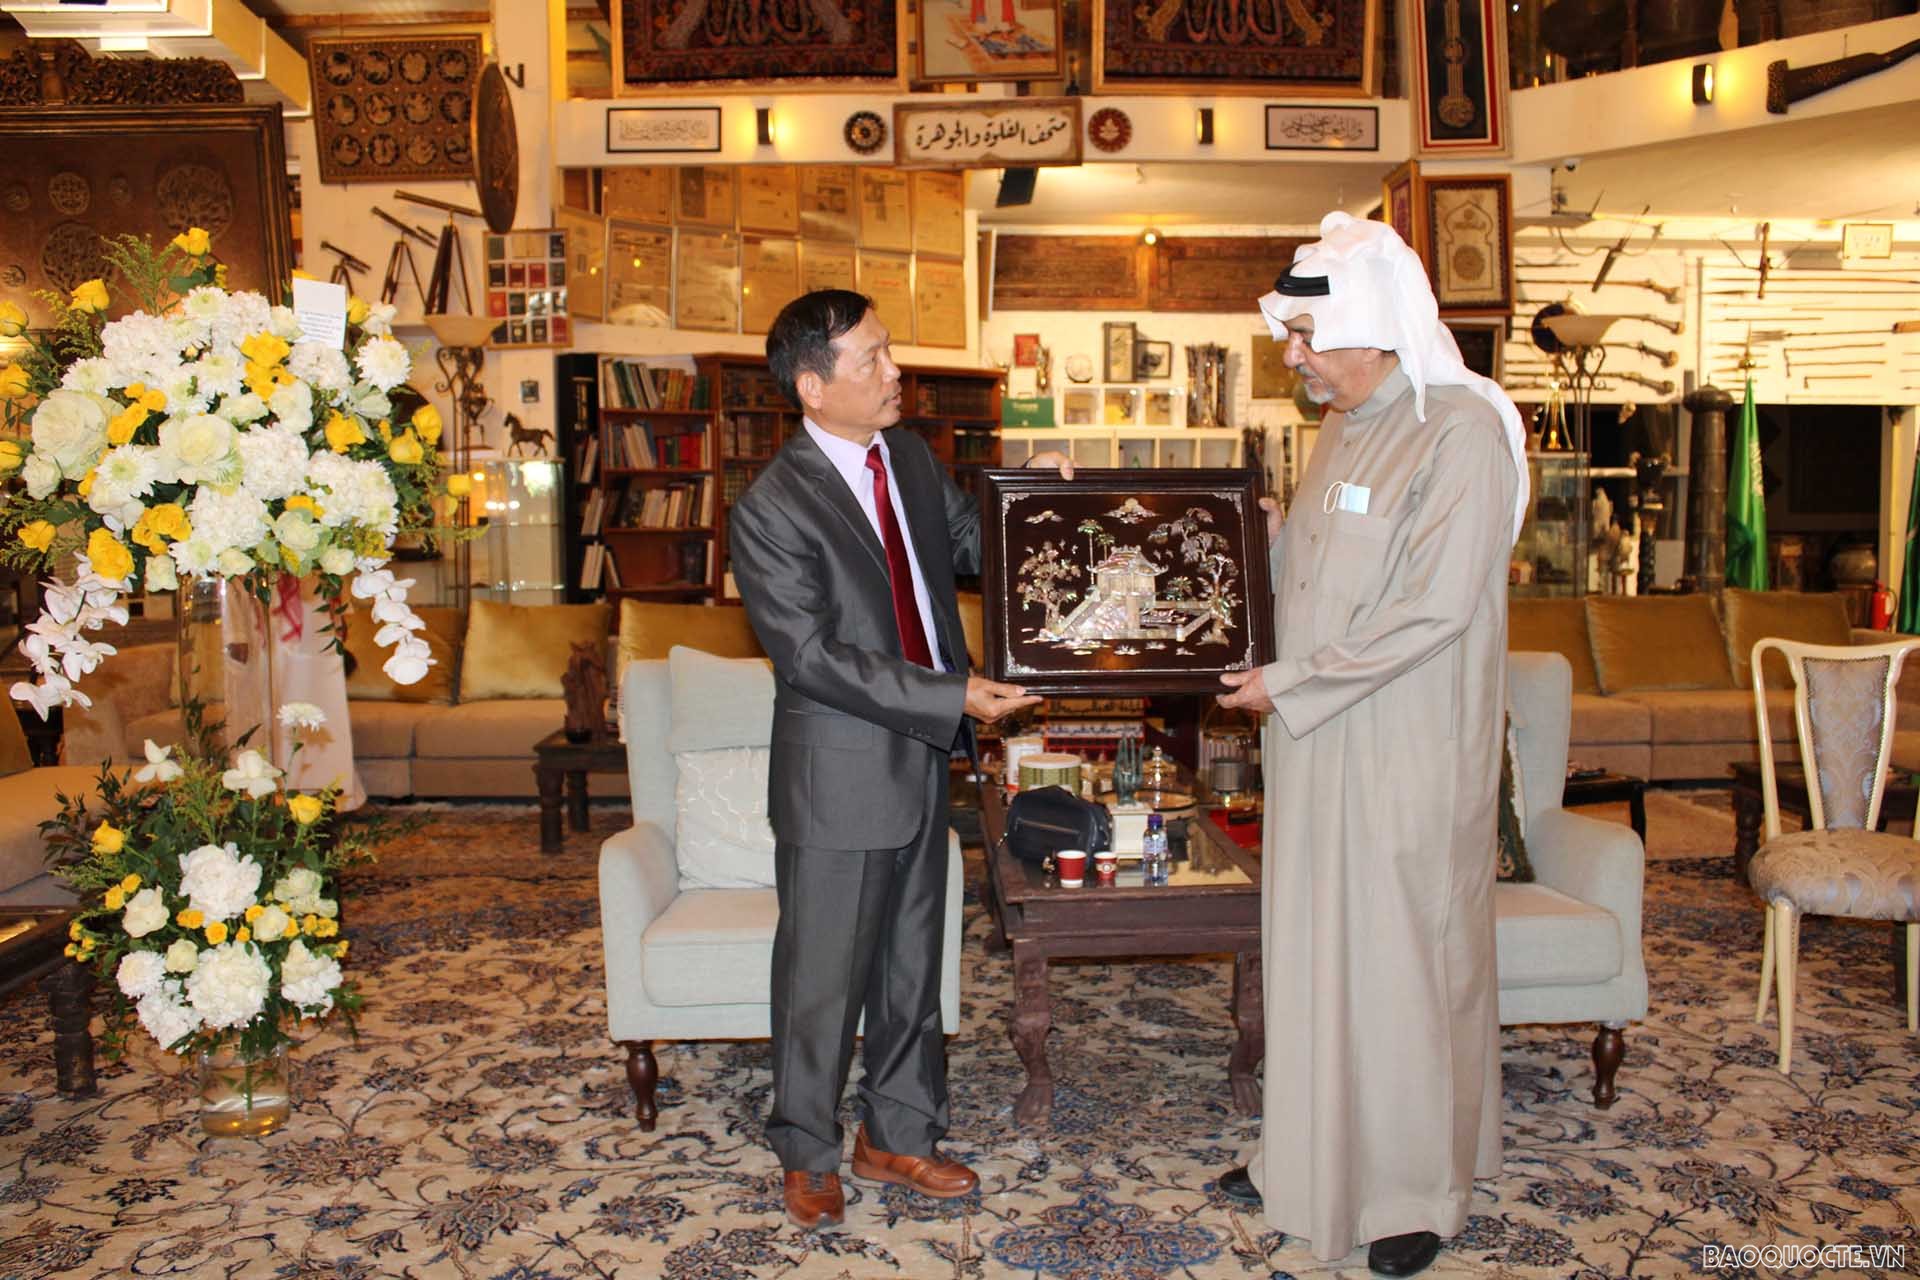 Đại sứ Vũ Viết Dũng tặng quà cho ông Abdulwahab Al-Ghunaim, chủ nhân Bảo tàng.